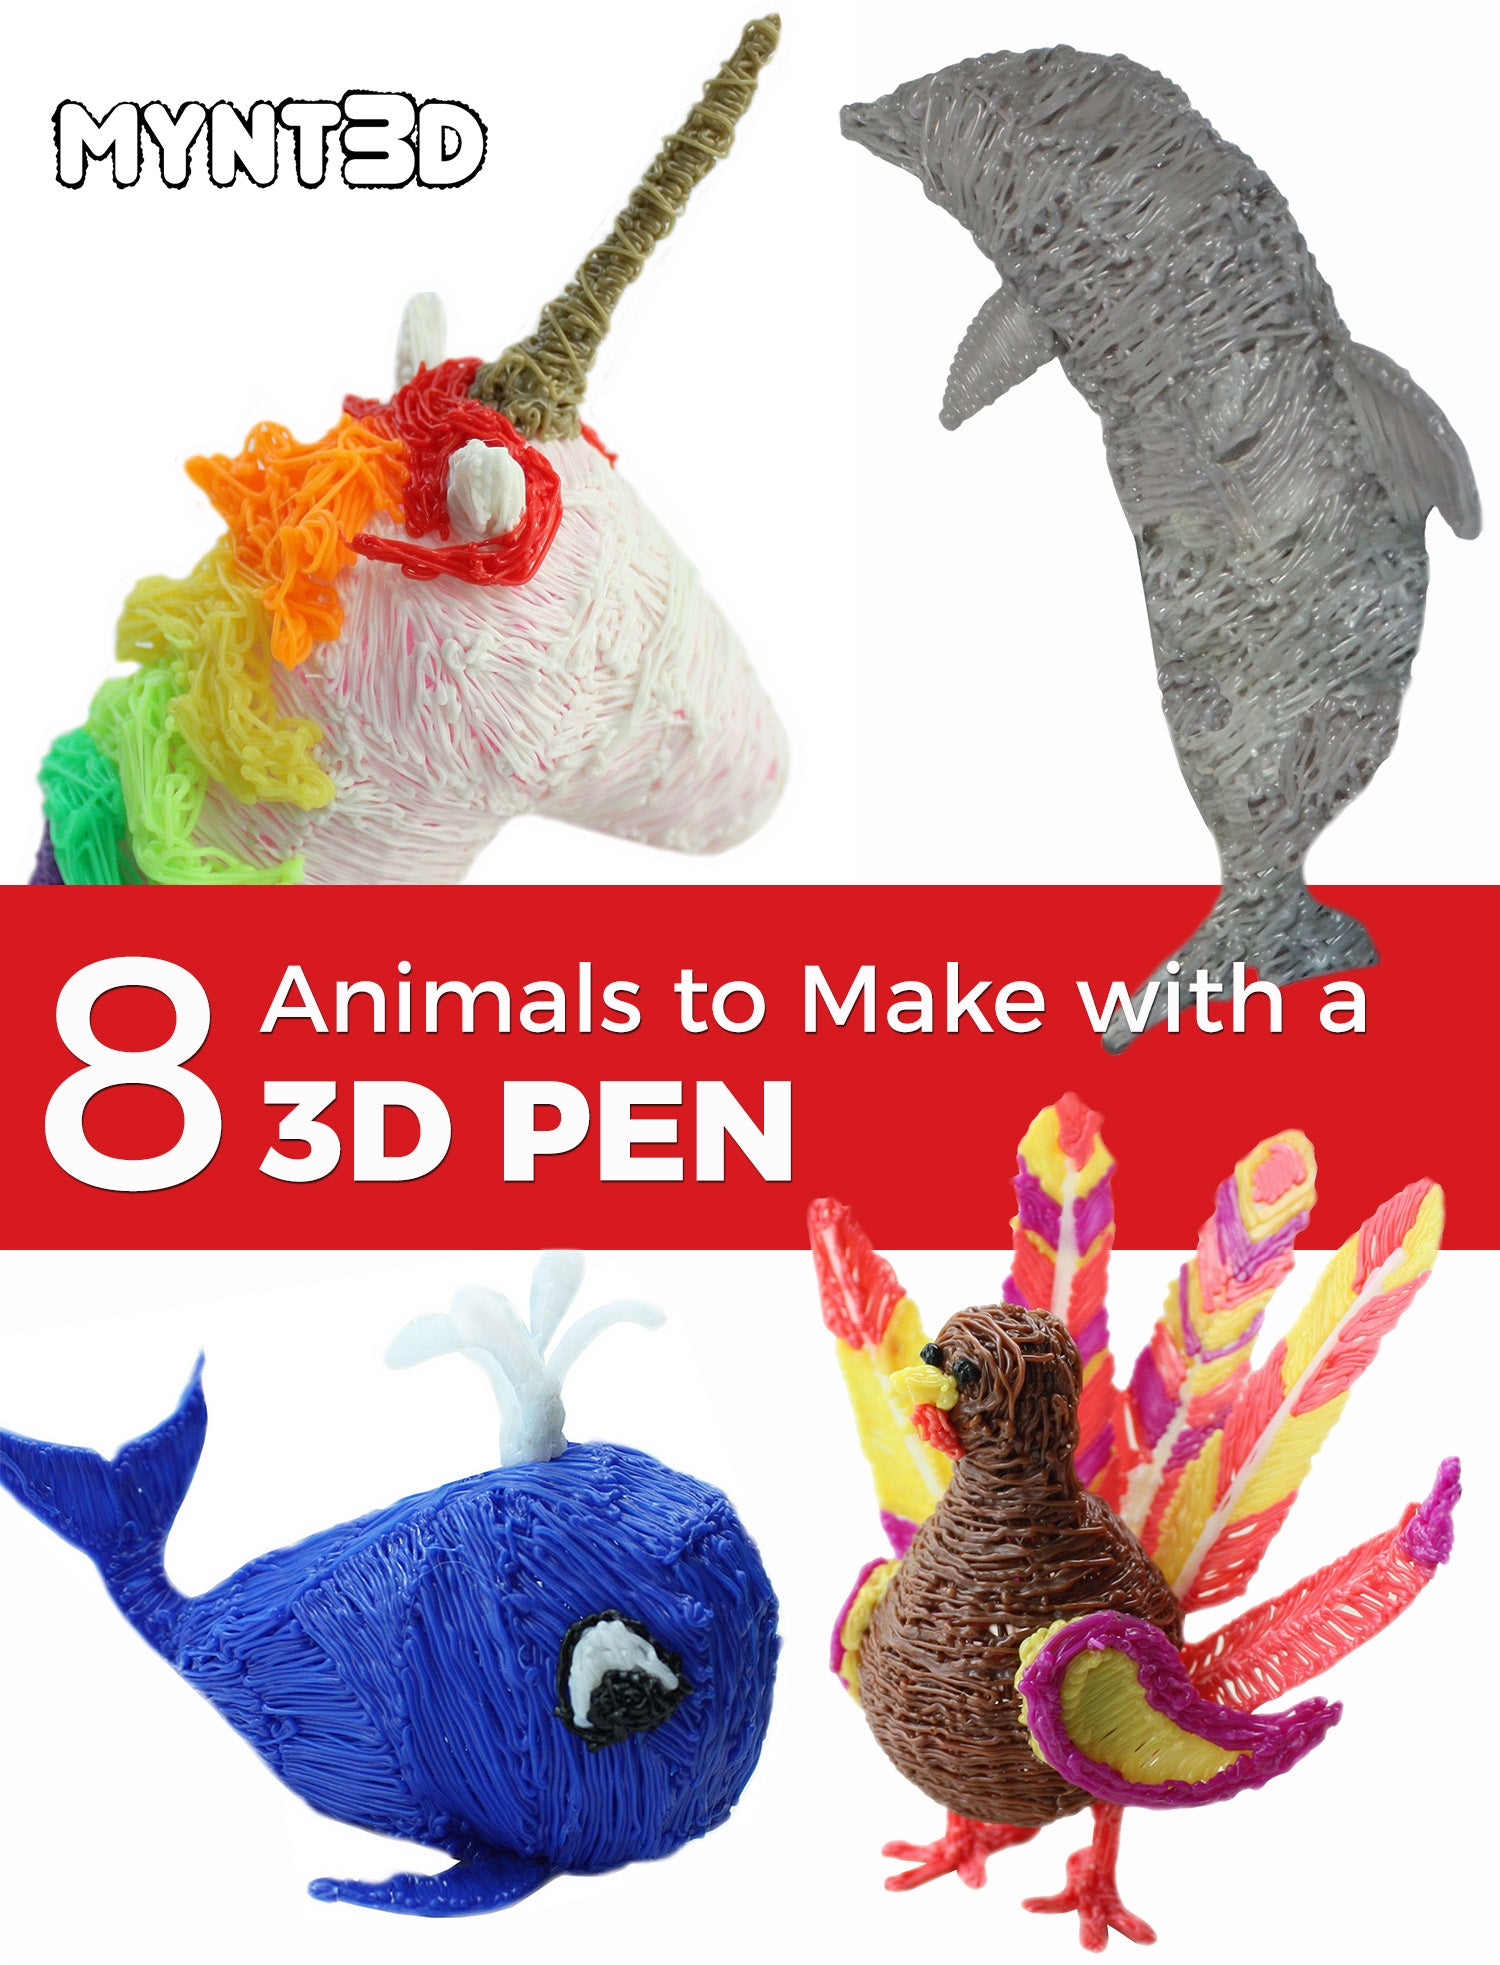 Design Challenge #3: 3D Pens - RLES MEDIA